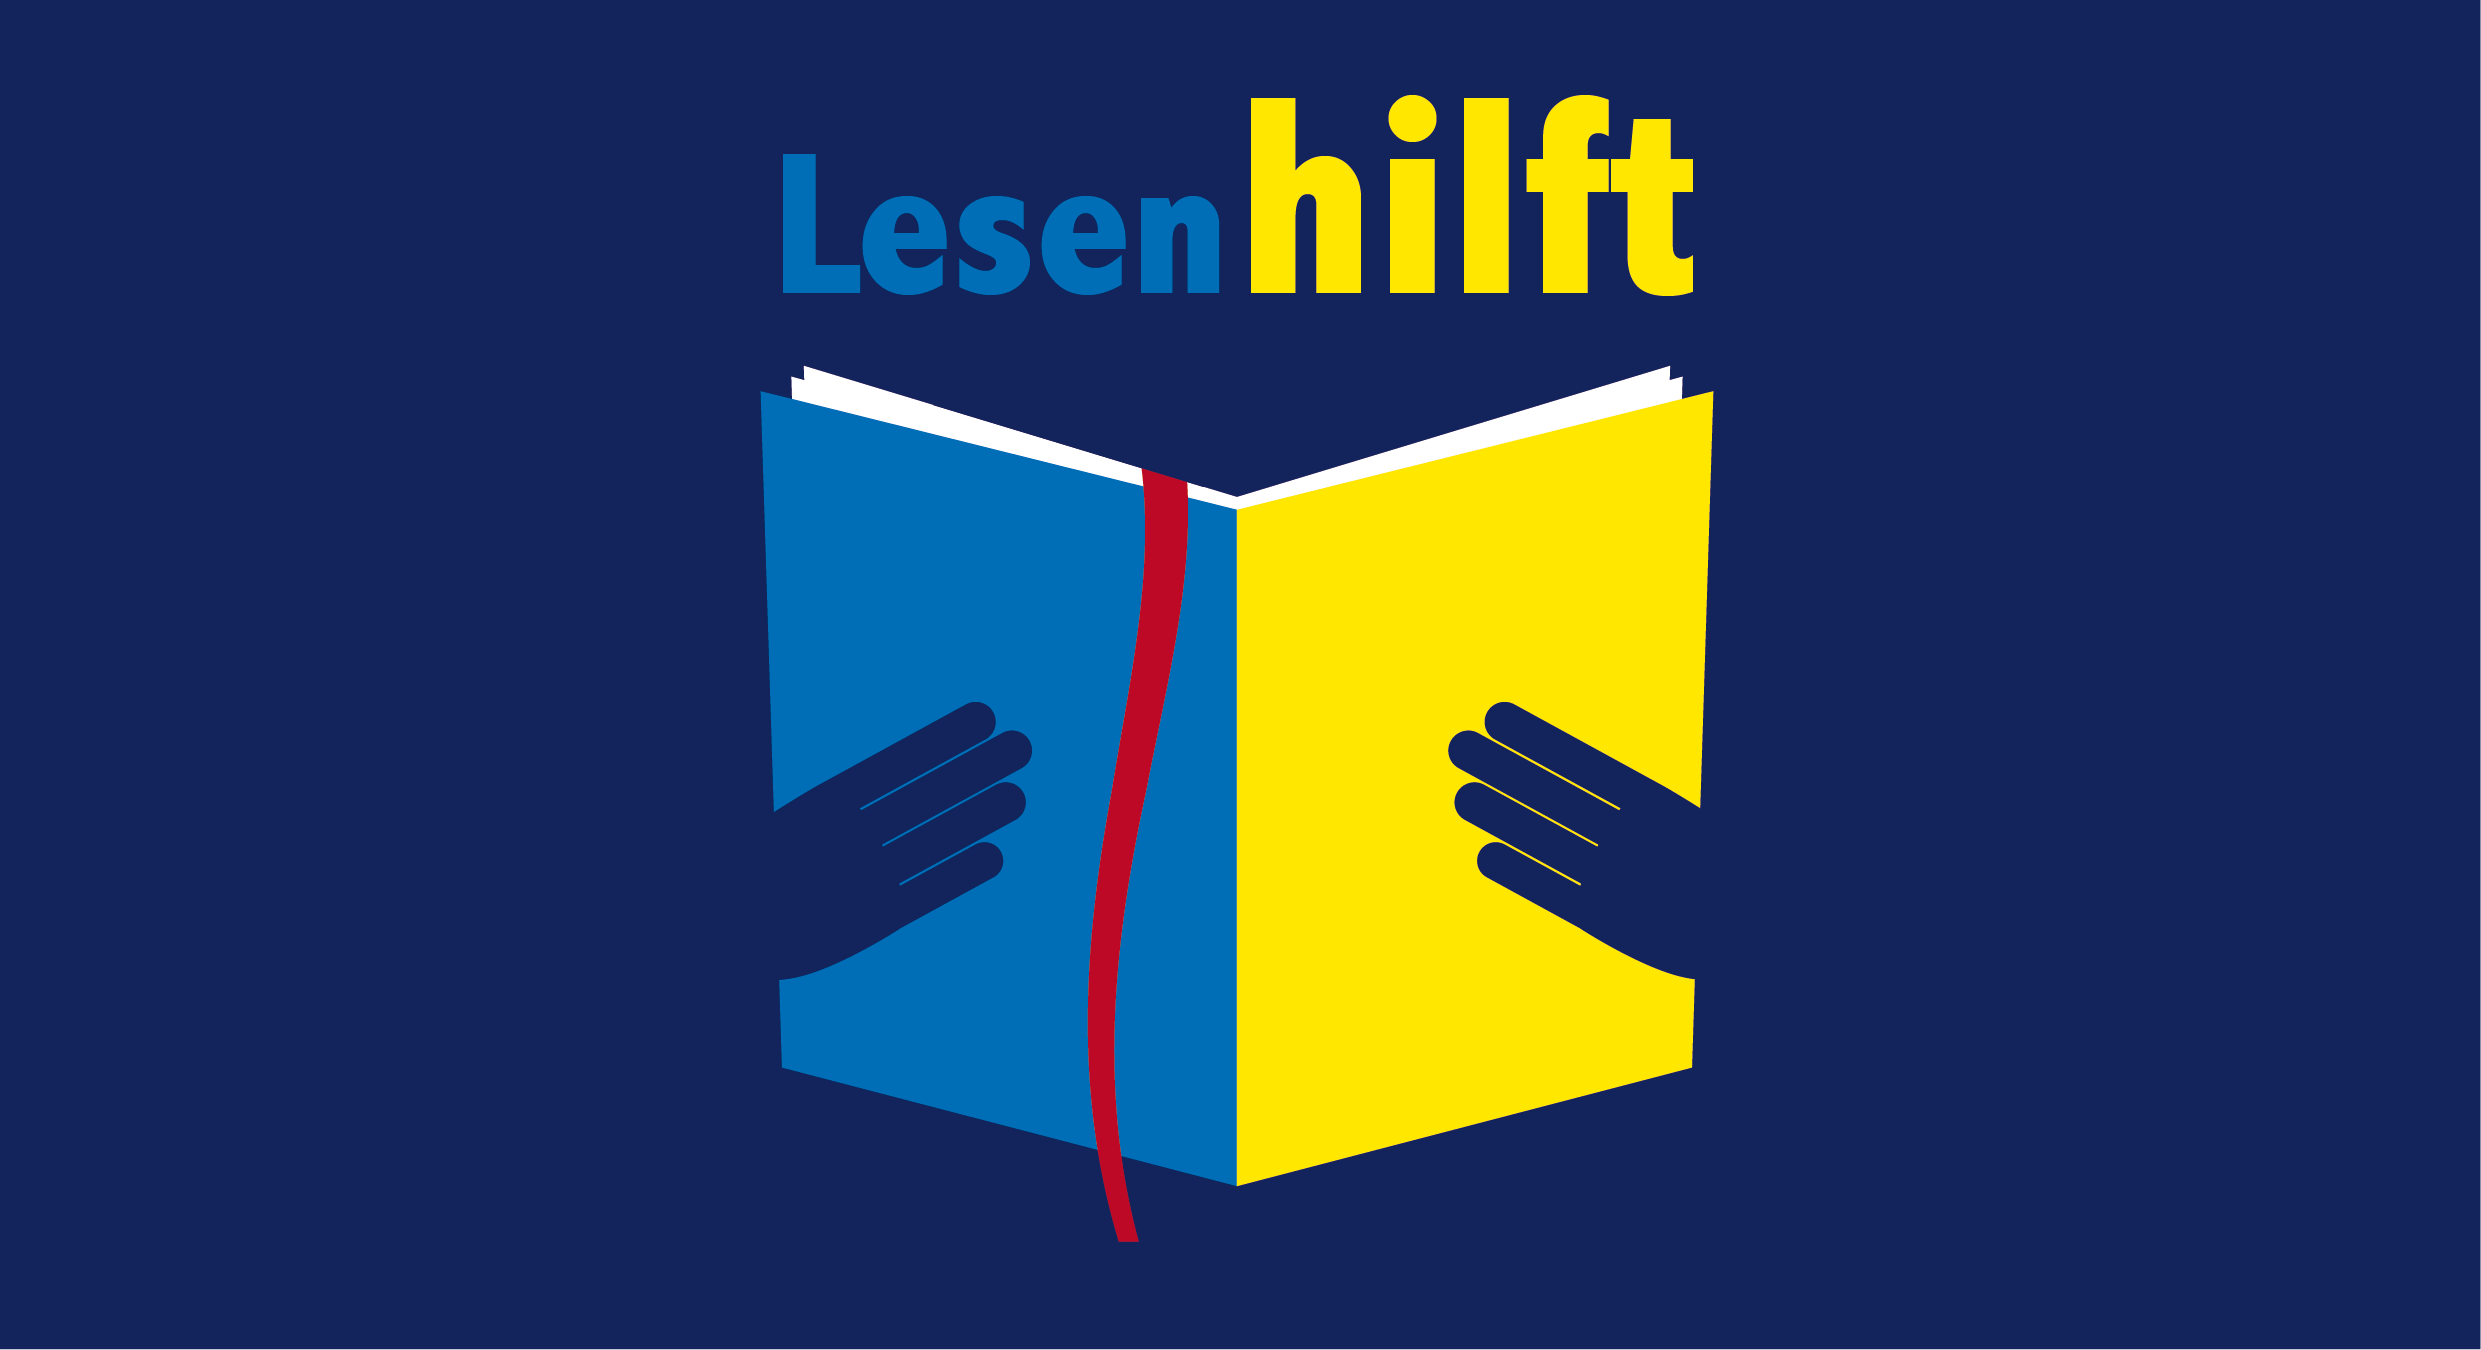 Ukraine. Lesen hilft. Benefizveranstaltung in Kooperation mit dem TAK Theater Liechtenstein